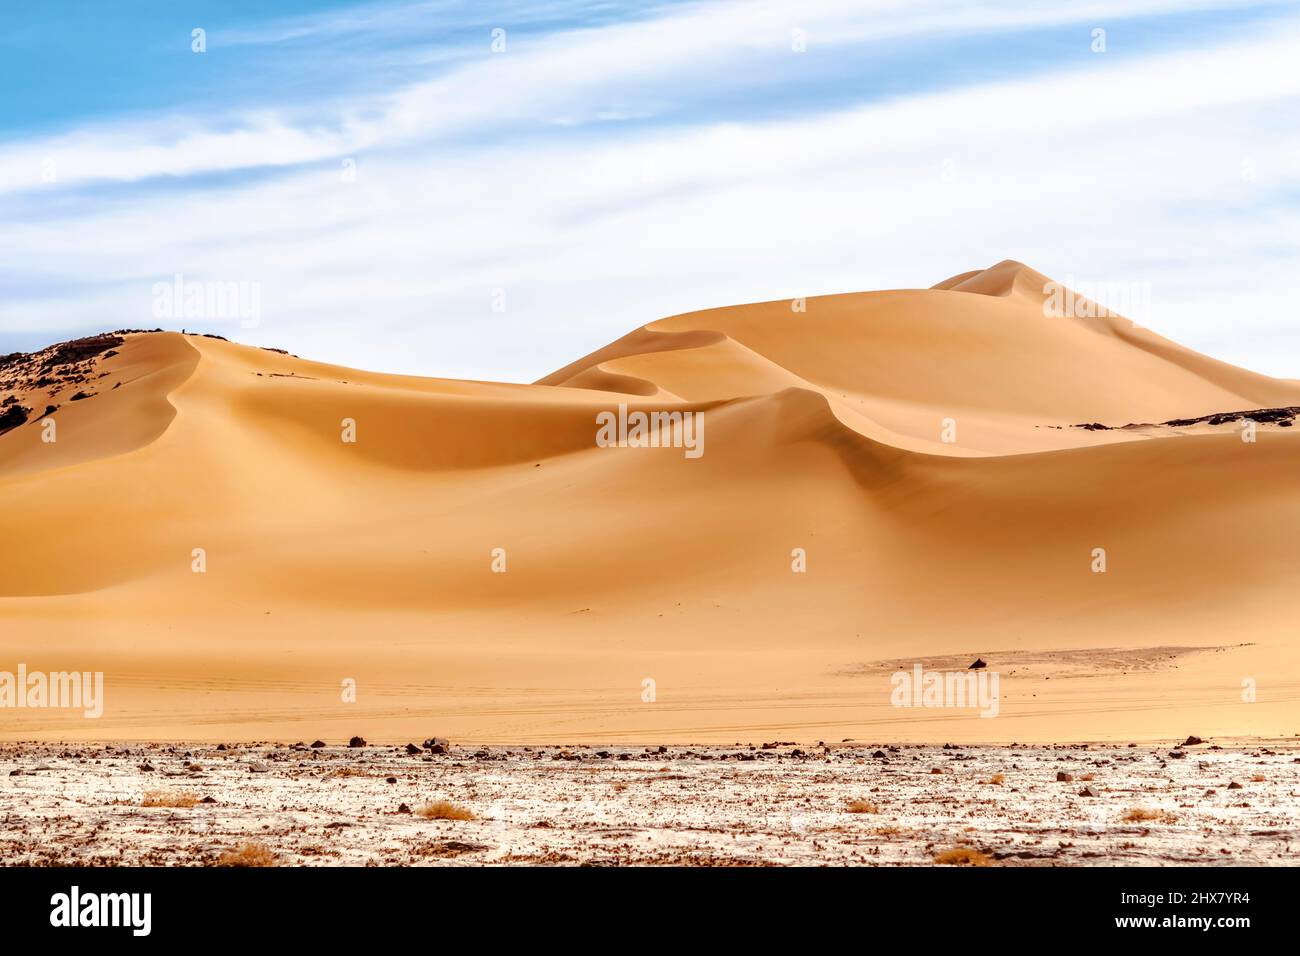 Vue à angle bas de la dune de sable sinueuse dans le désert du Sahara. Niveau de surface coloré, terrain blanc reg, dune dorée ondulée élevée, ciel bleu nuageux. Banque D'Images